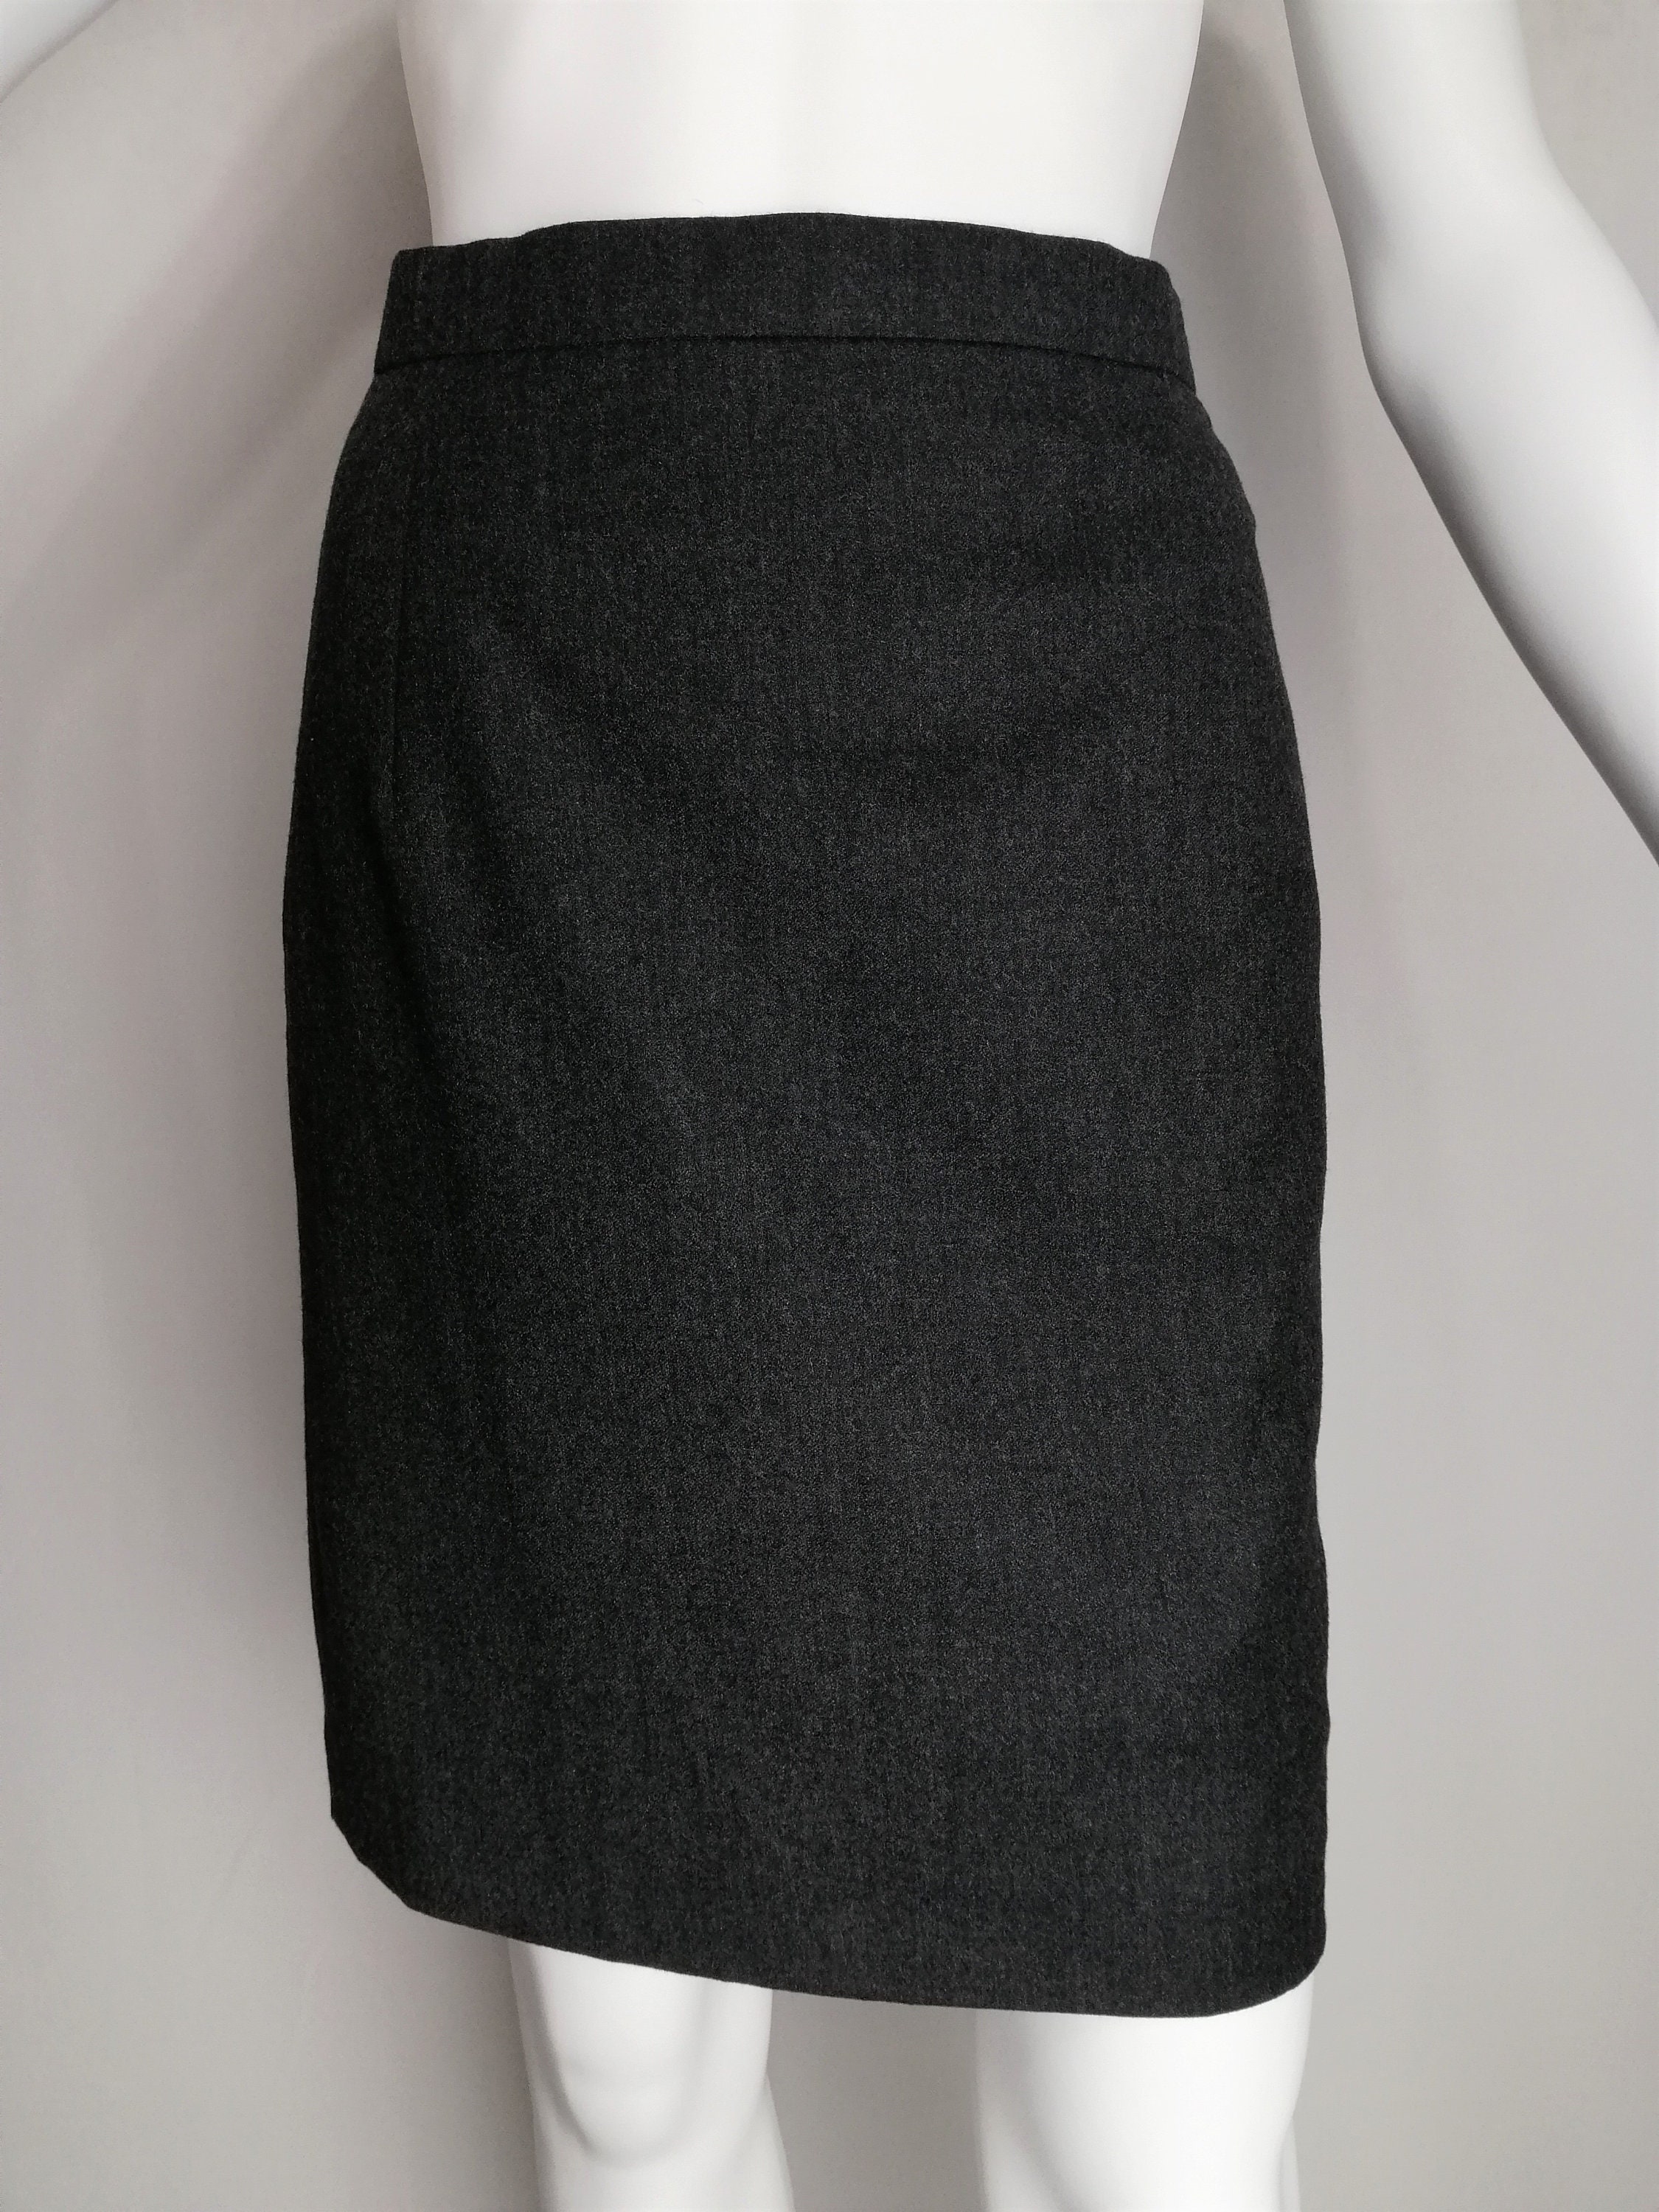 CERRUTI 1881 Wool Skirt 80s Womens Designer Skirt Charcoal - Etsy